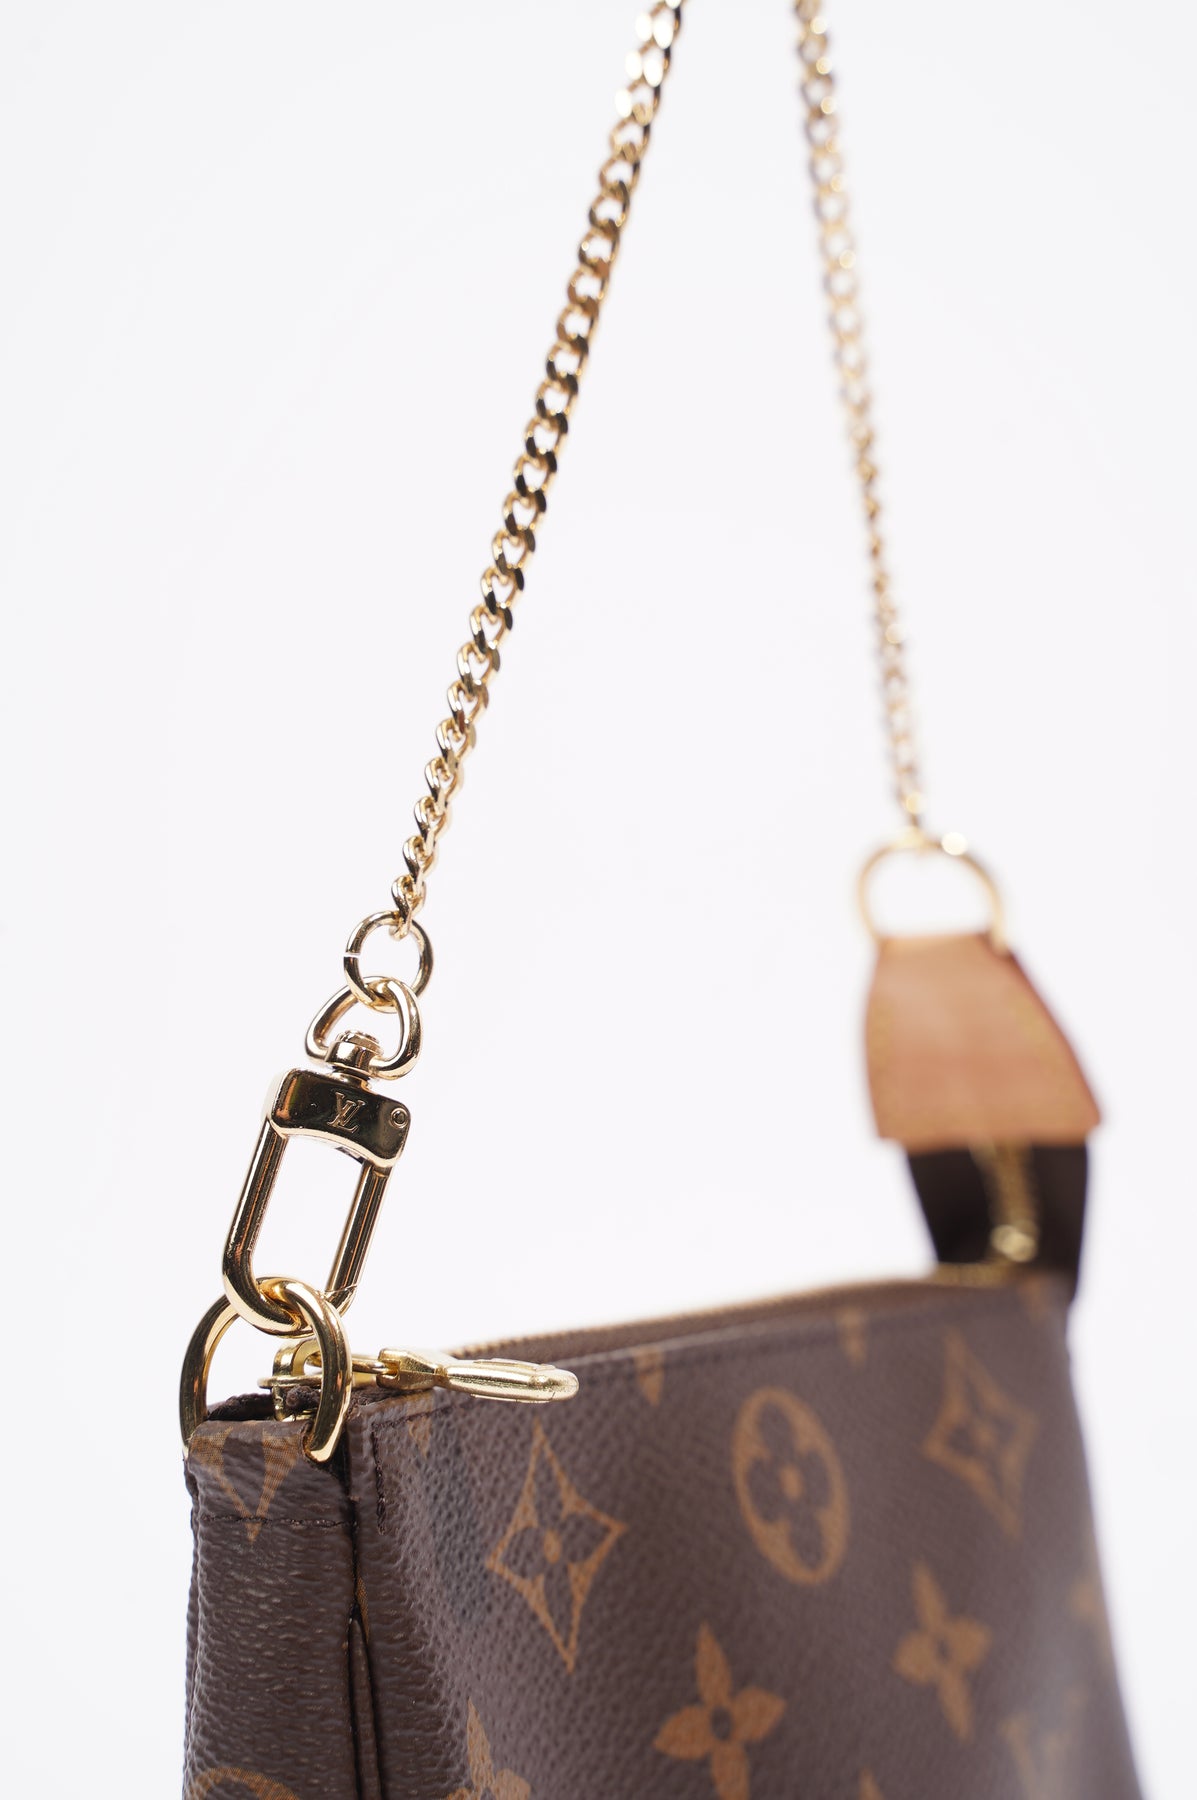 Louis Vuitton Monogram Pochette Accessories with Louis Vuitton Adjusta –  Luxmary Handbags